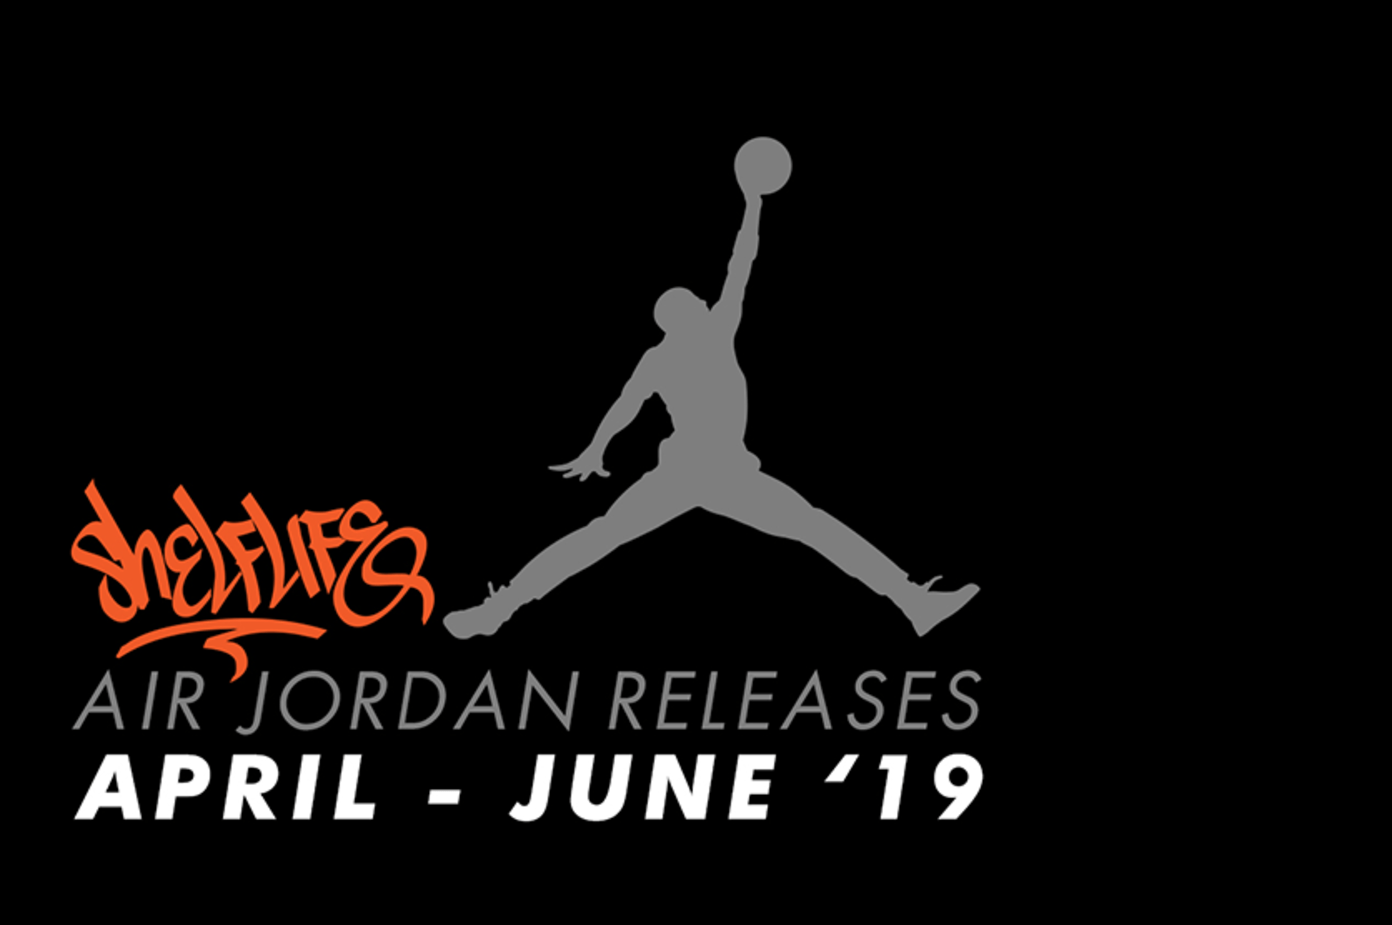 Nike Air Jordan Release Dates April 